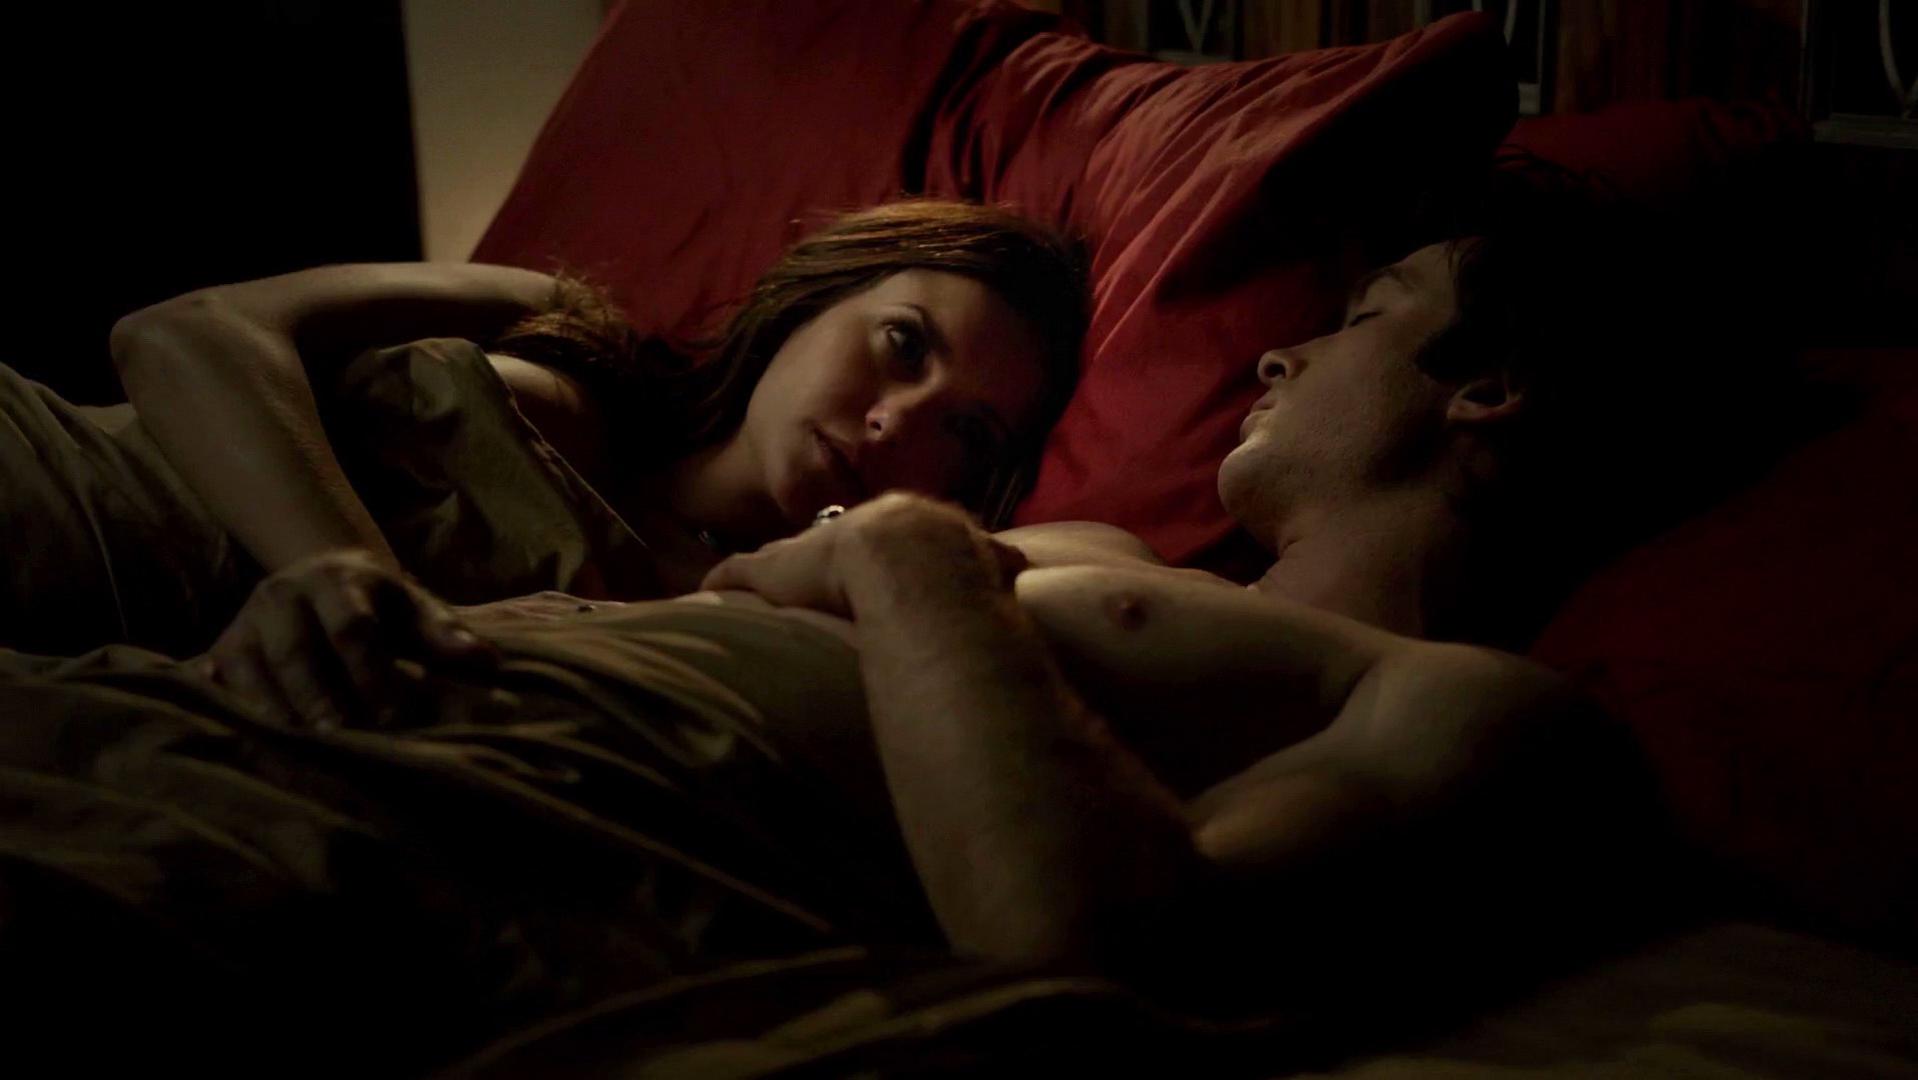 Nude Video Celebs Nina Dobrev Sexy Candice Accola Sexy The Vampire Diaries S06e13 17 2015